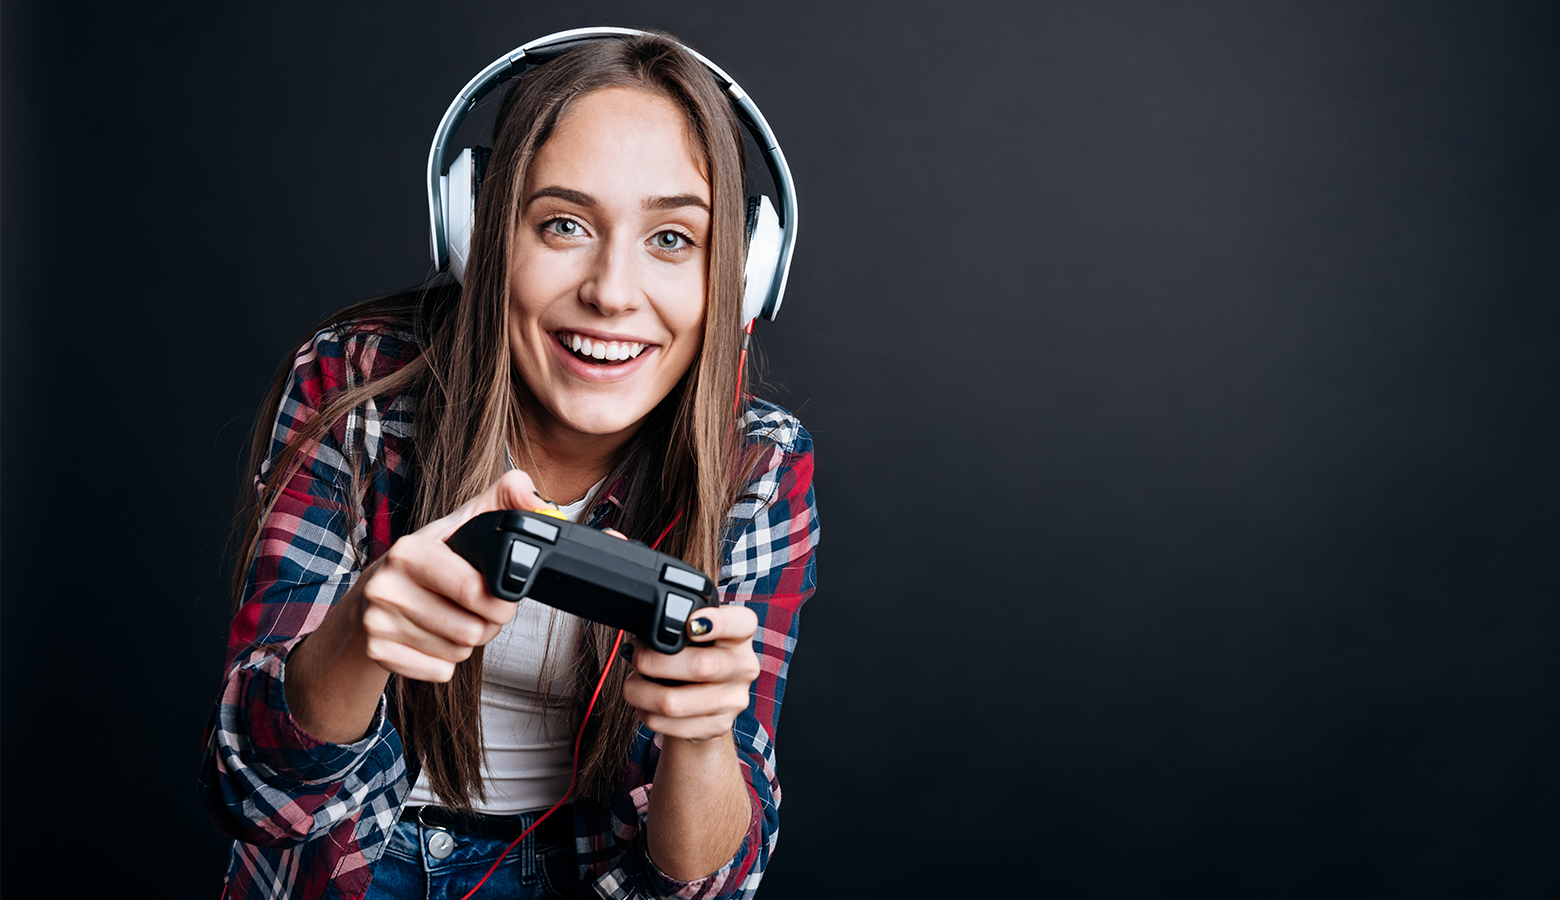 Foto: Fröhliches Teenager Mädchen mit Kopfhörern auf hält einen Joystick in der Hand